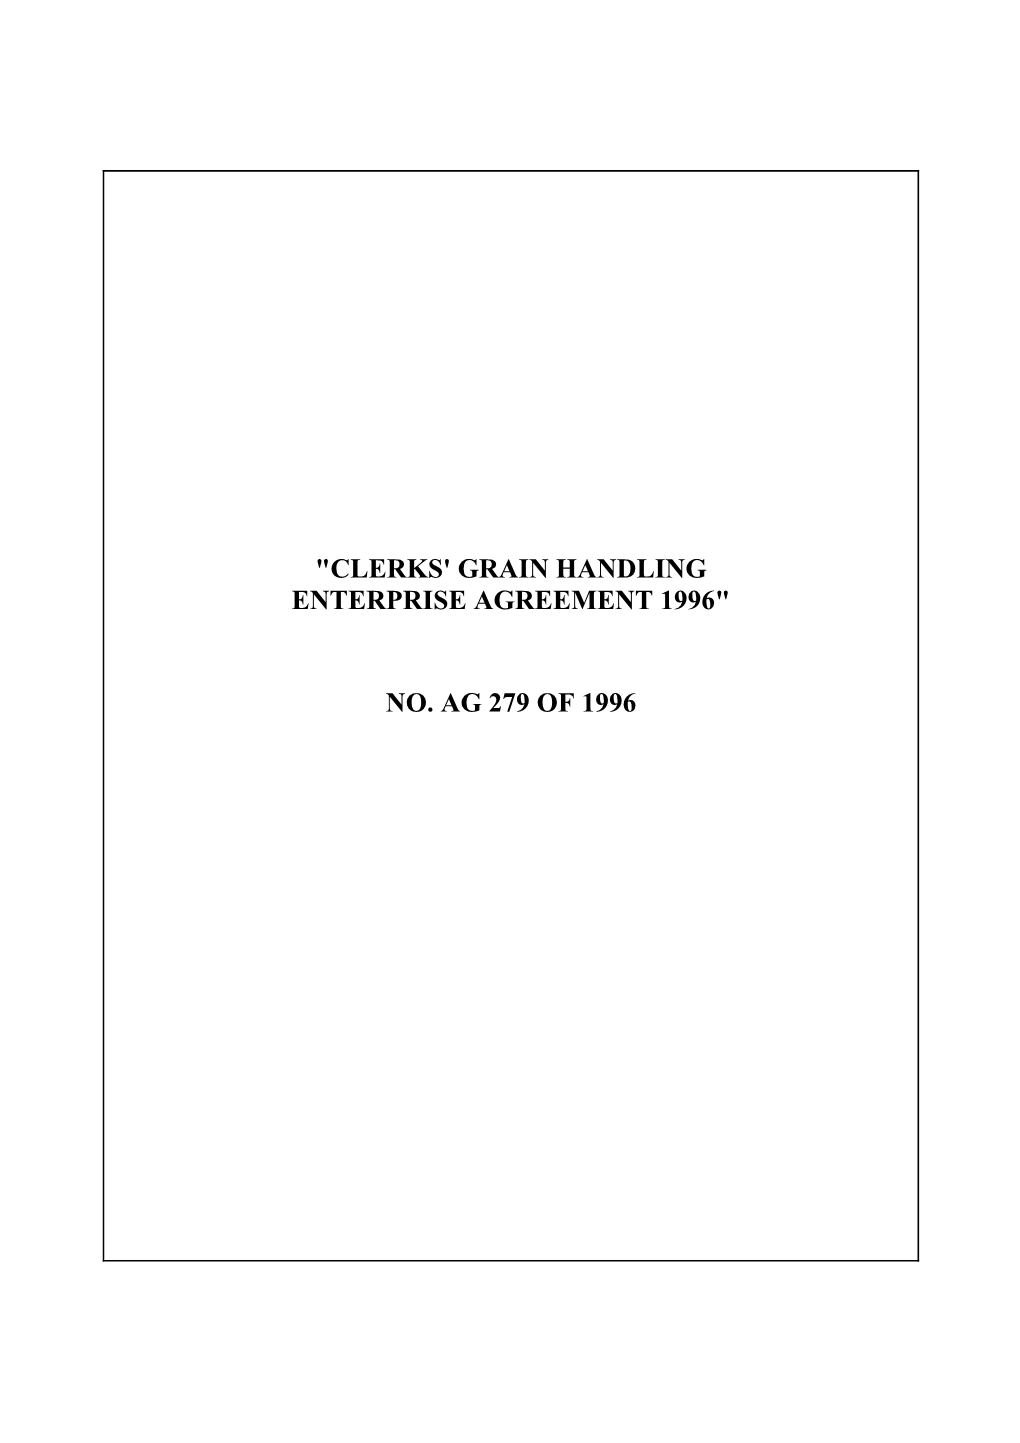 Clerks' Grain Handling Enterprise Agreement 1996